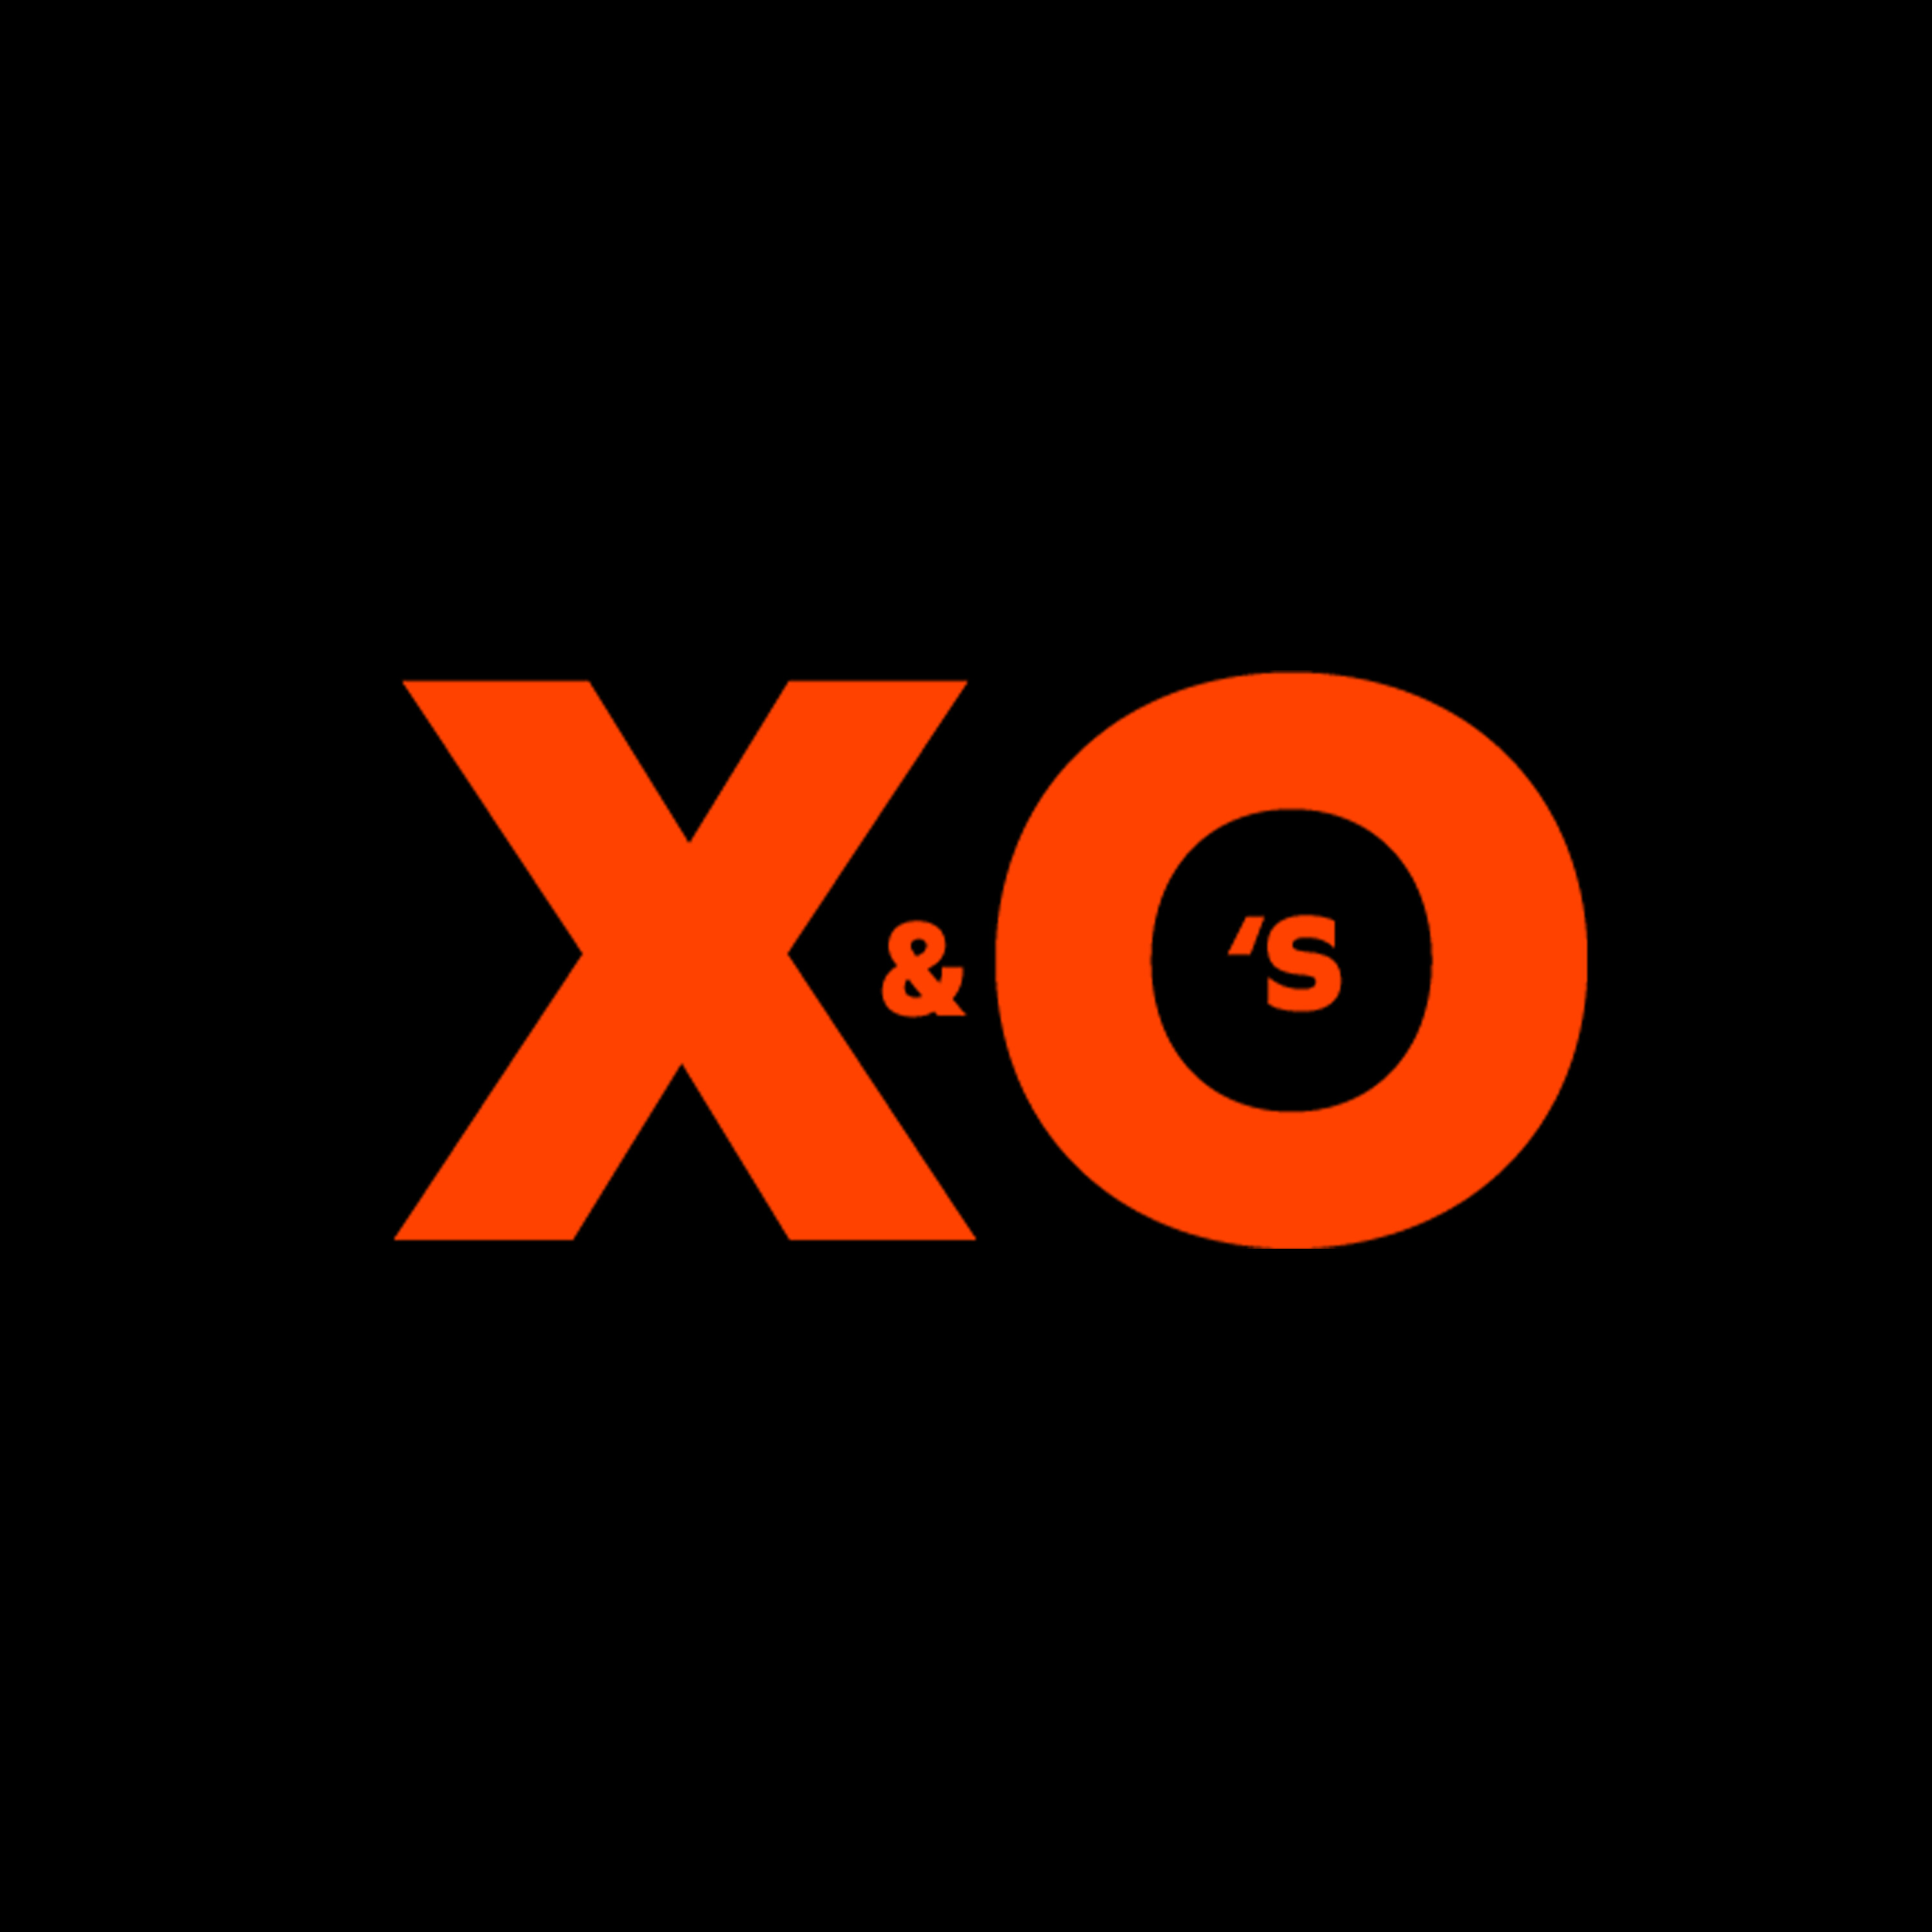 X&O's - Bye bye 2021